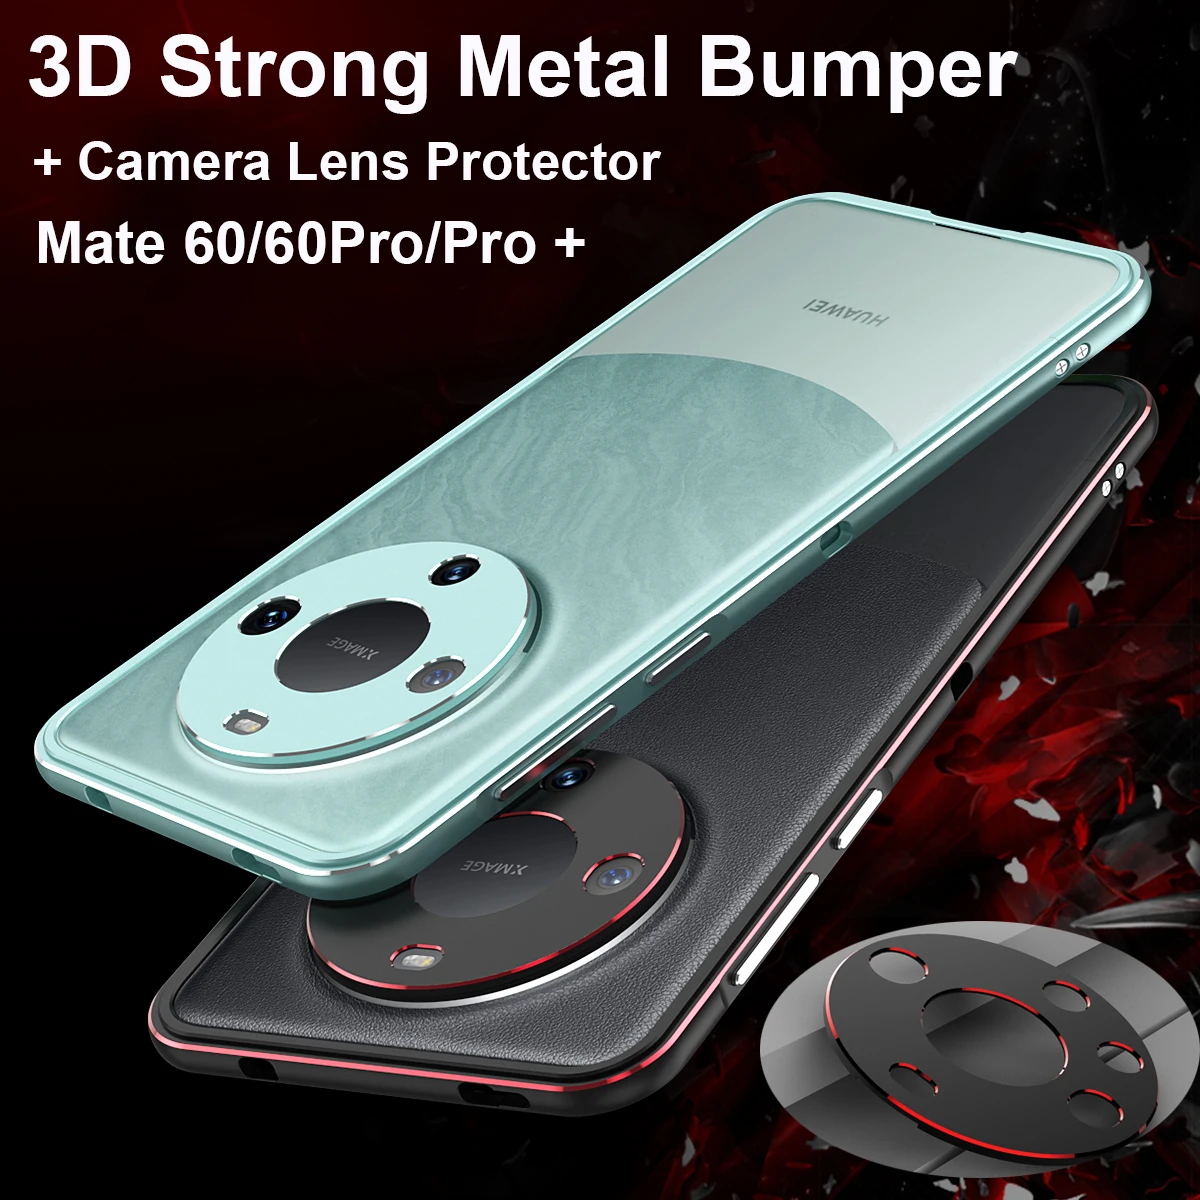 

Чехол для Huawei Mate 60 Pro металлический бампер 3D прочная алюминиевая защитная рамка для объектива камеры противоударный бронированный чехол для телефона Mate 60